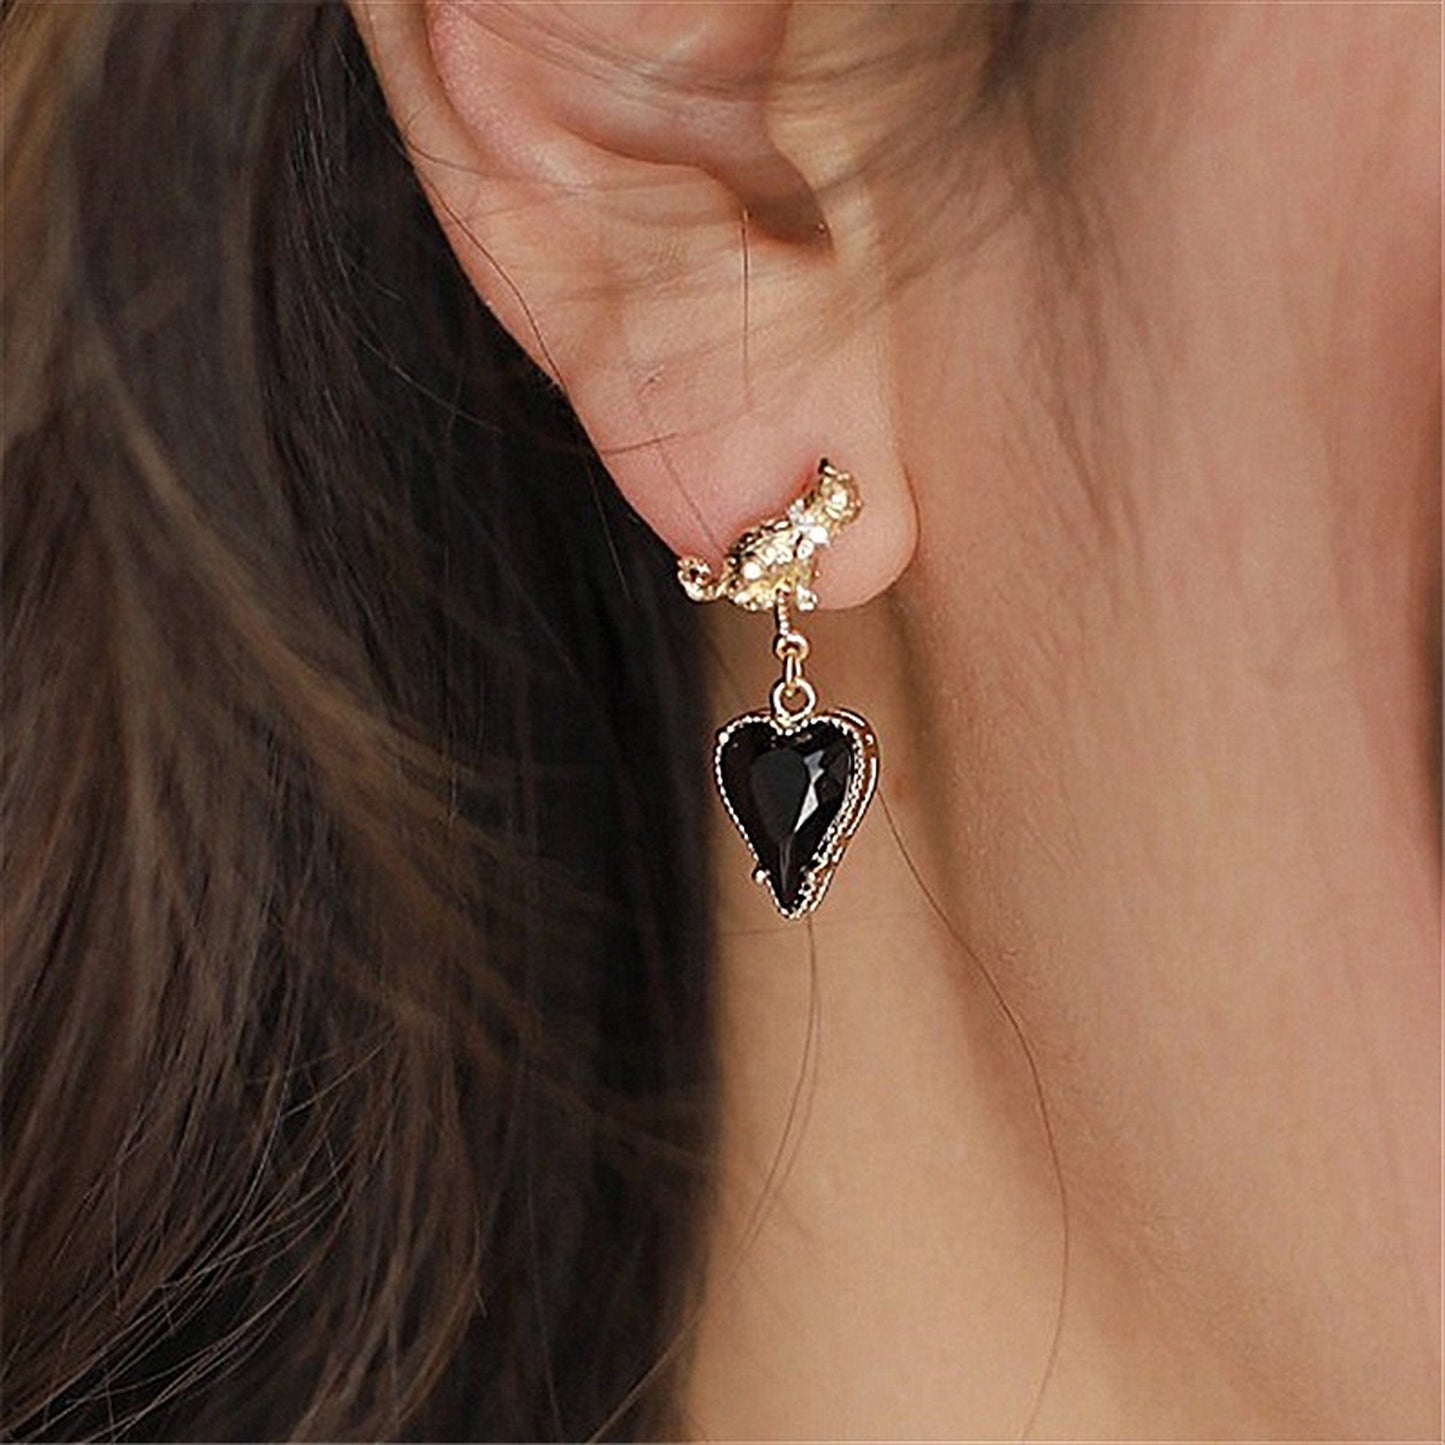 Black Cat Earrings, Gothic Earrings, Kitten Earrings, Black Stone Earrings, Dark Lolita Earrings, Heart Drop Earrings, Unique Earrings, Gift